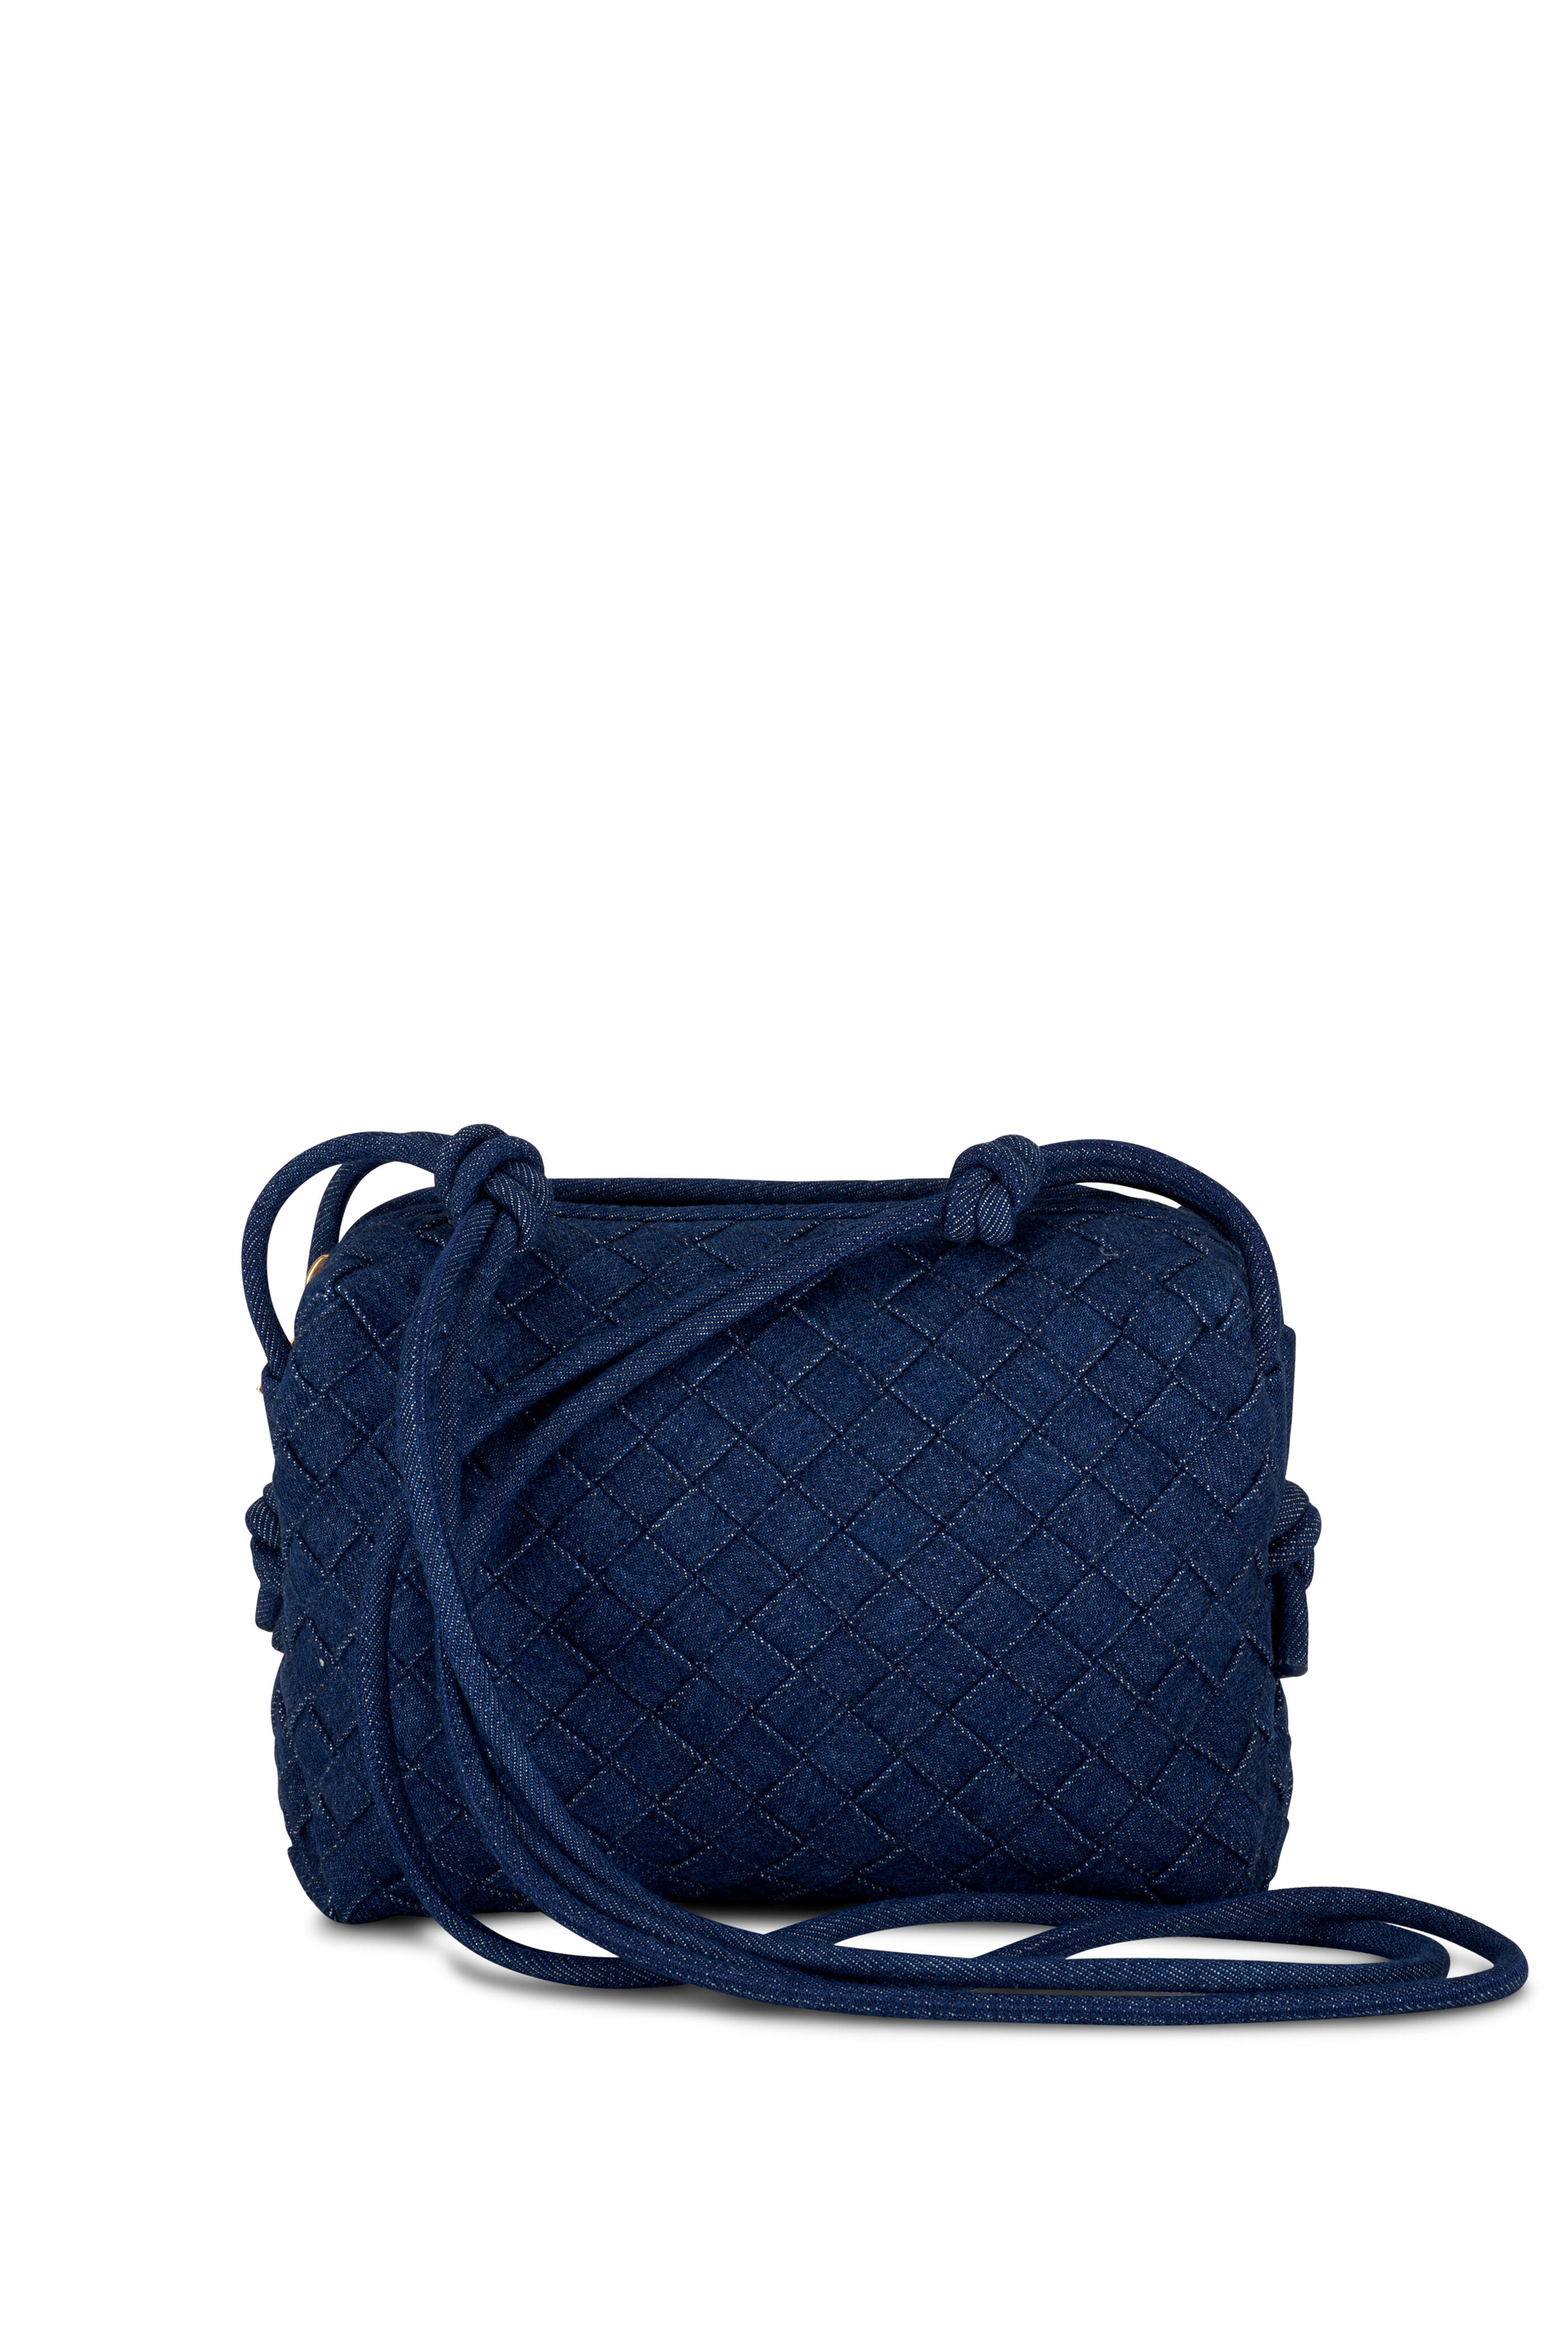 Bottega Veneta Small Loop Camera Bag - Blue - Woman - Lambskin